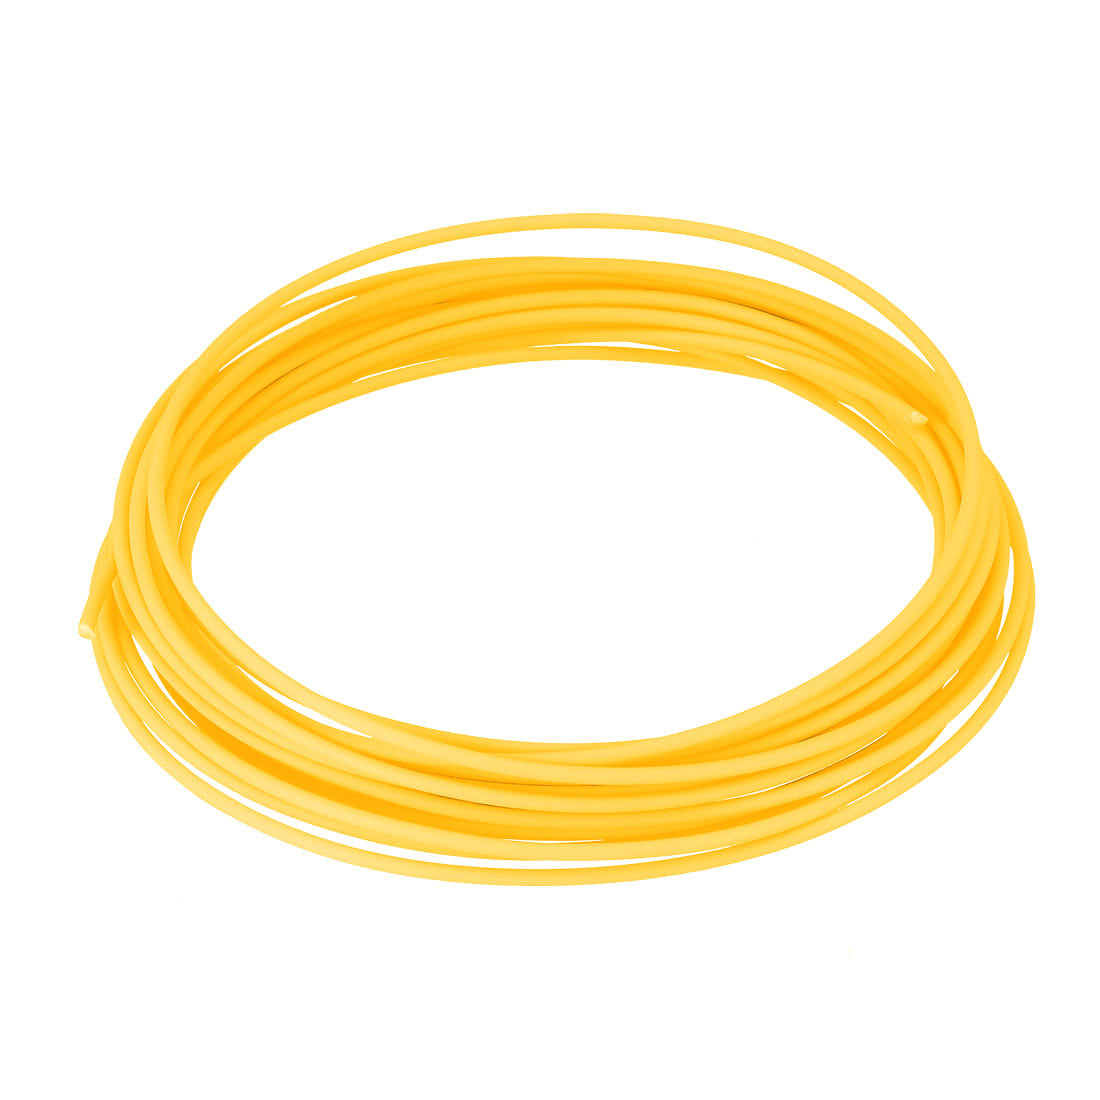 uxcell Uxcell 5 Meter/16 Ft PCL 3D Pen/3D Printer Filament, 1.75 mm Yellow